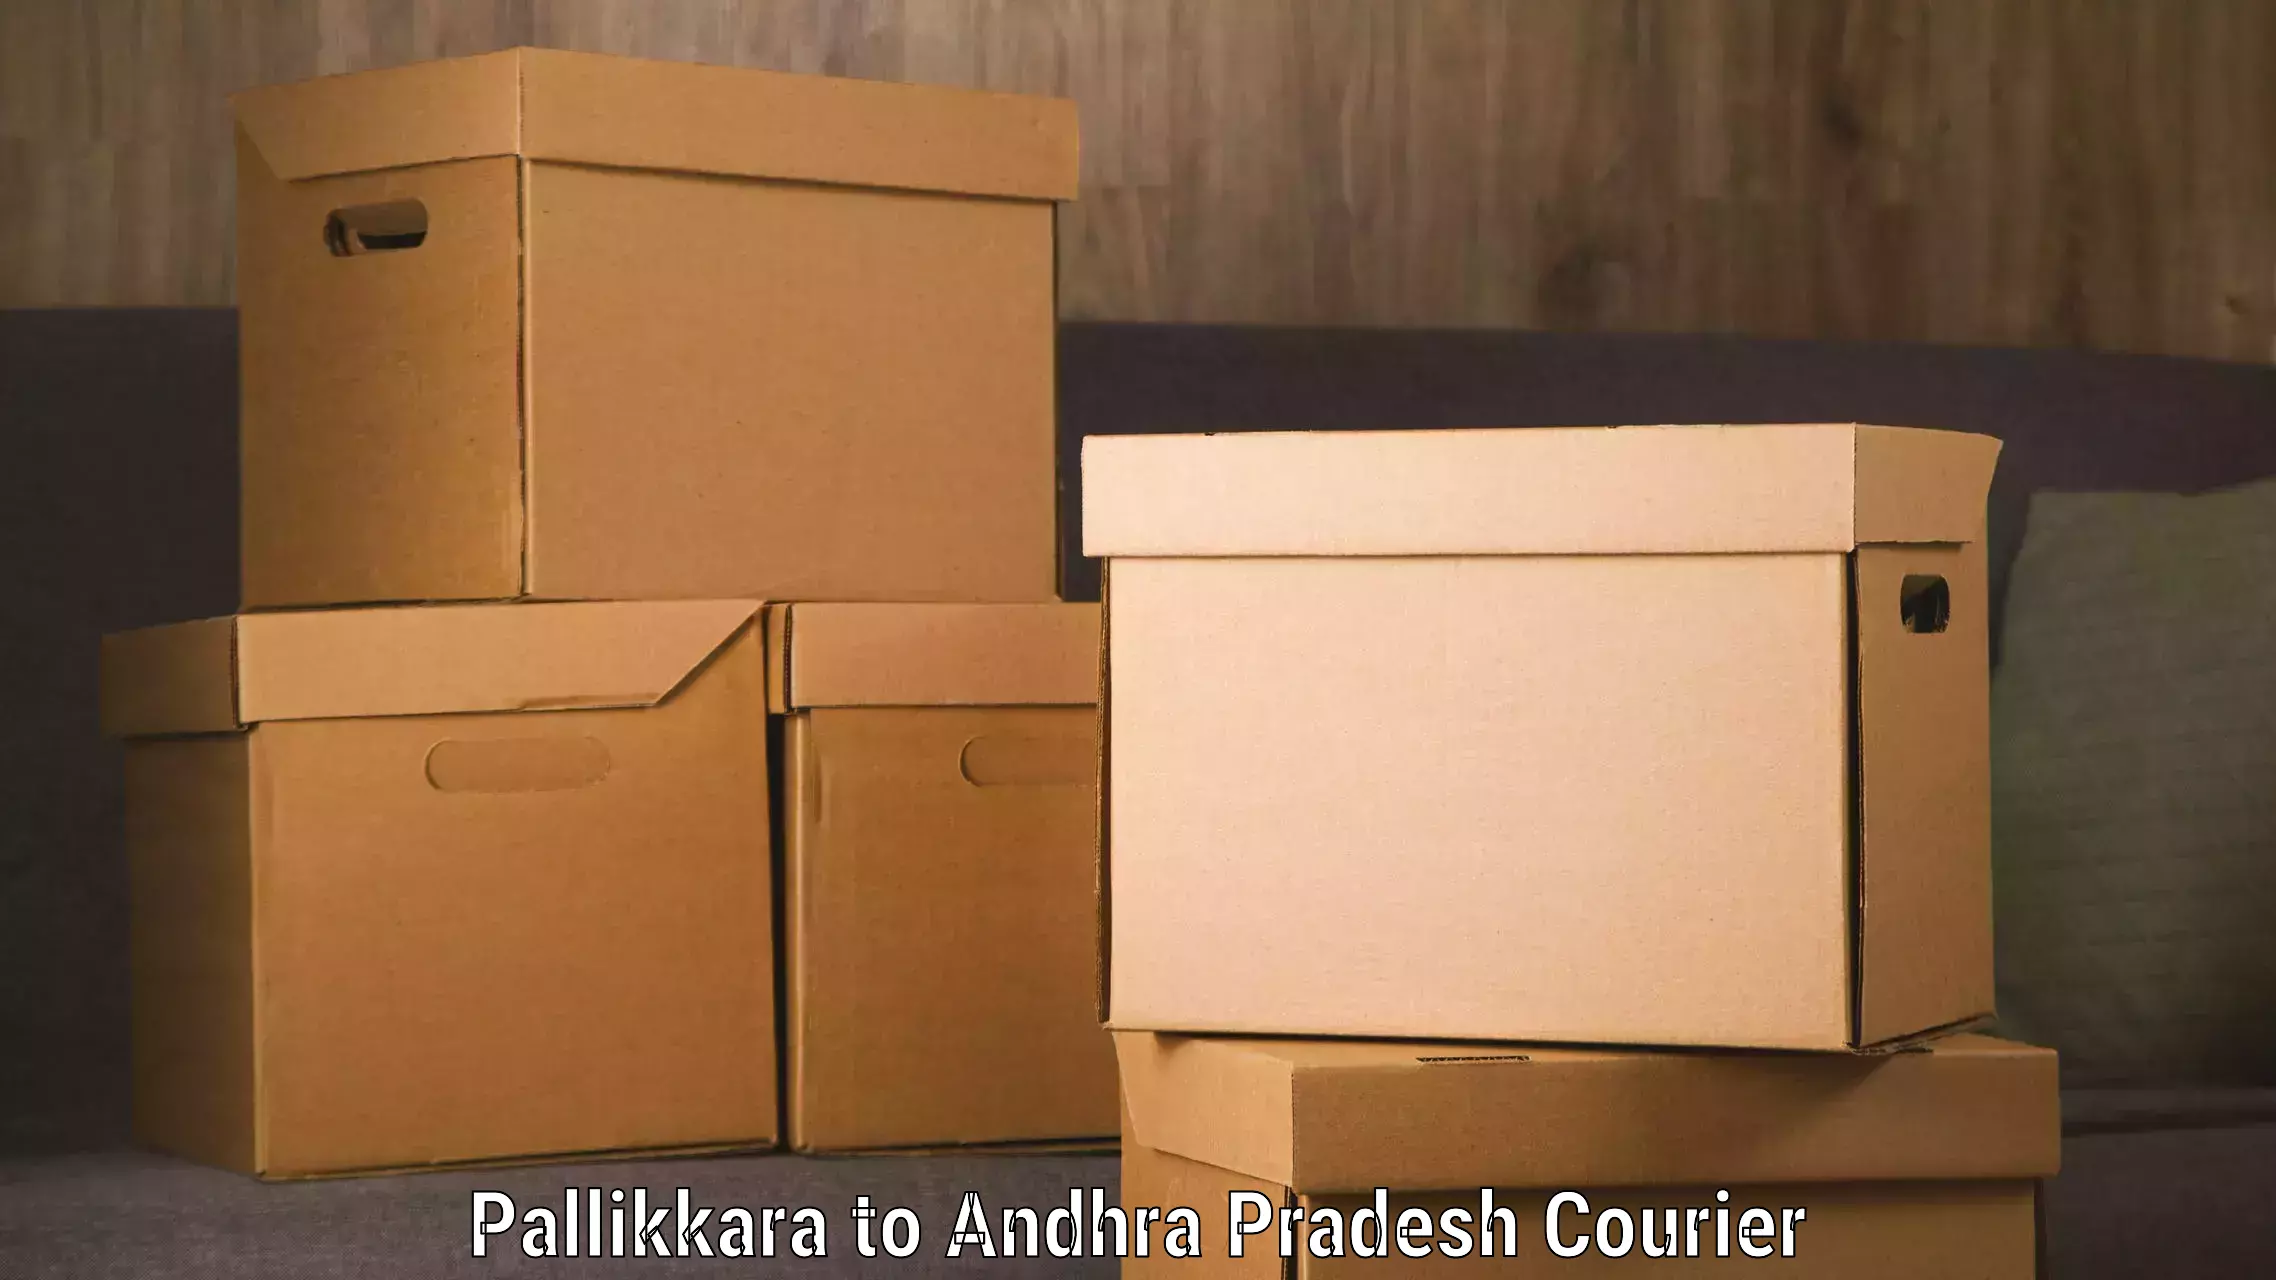 Professional courier services Pallikkara to Achampet Palnadu